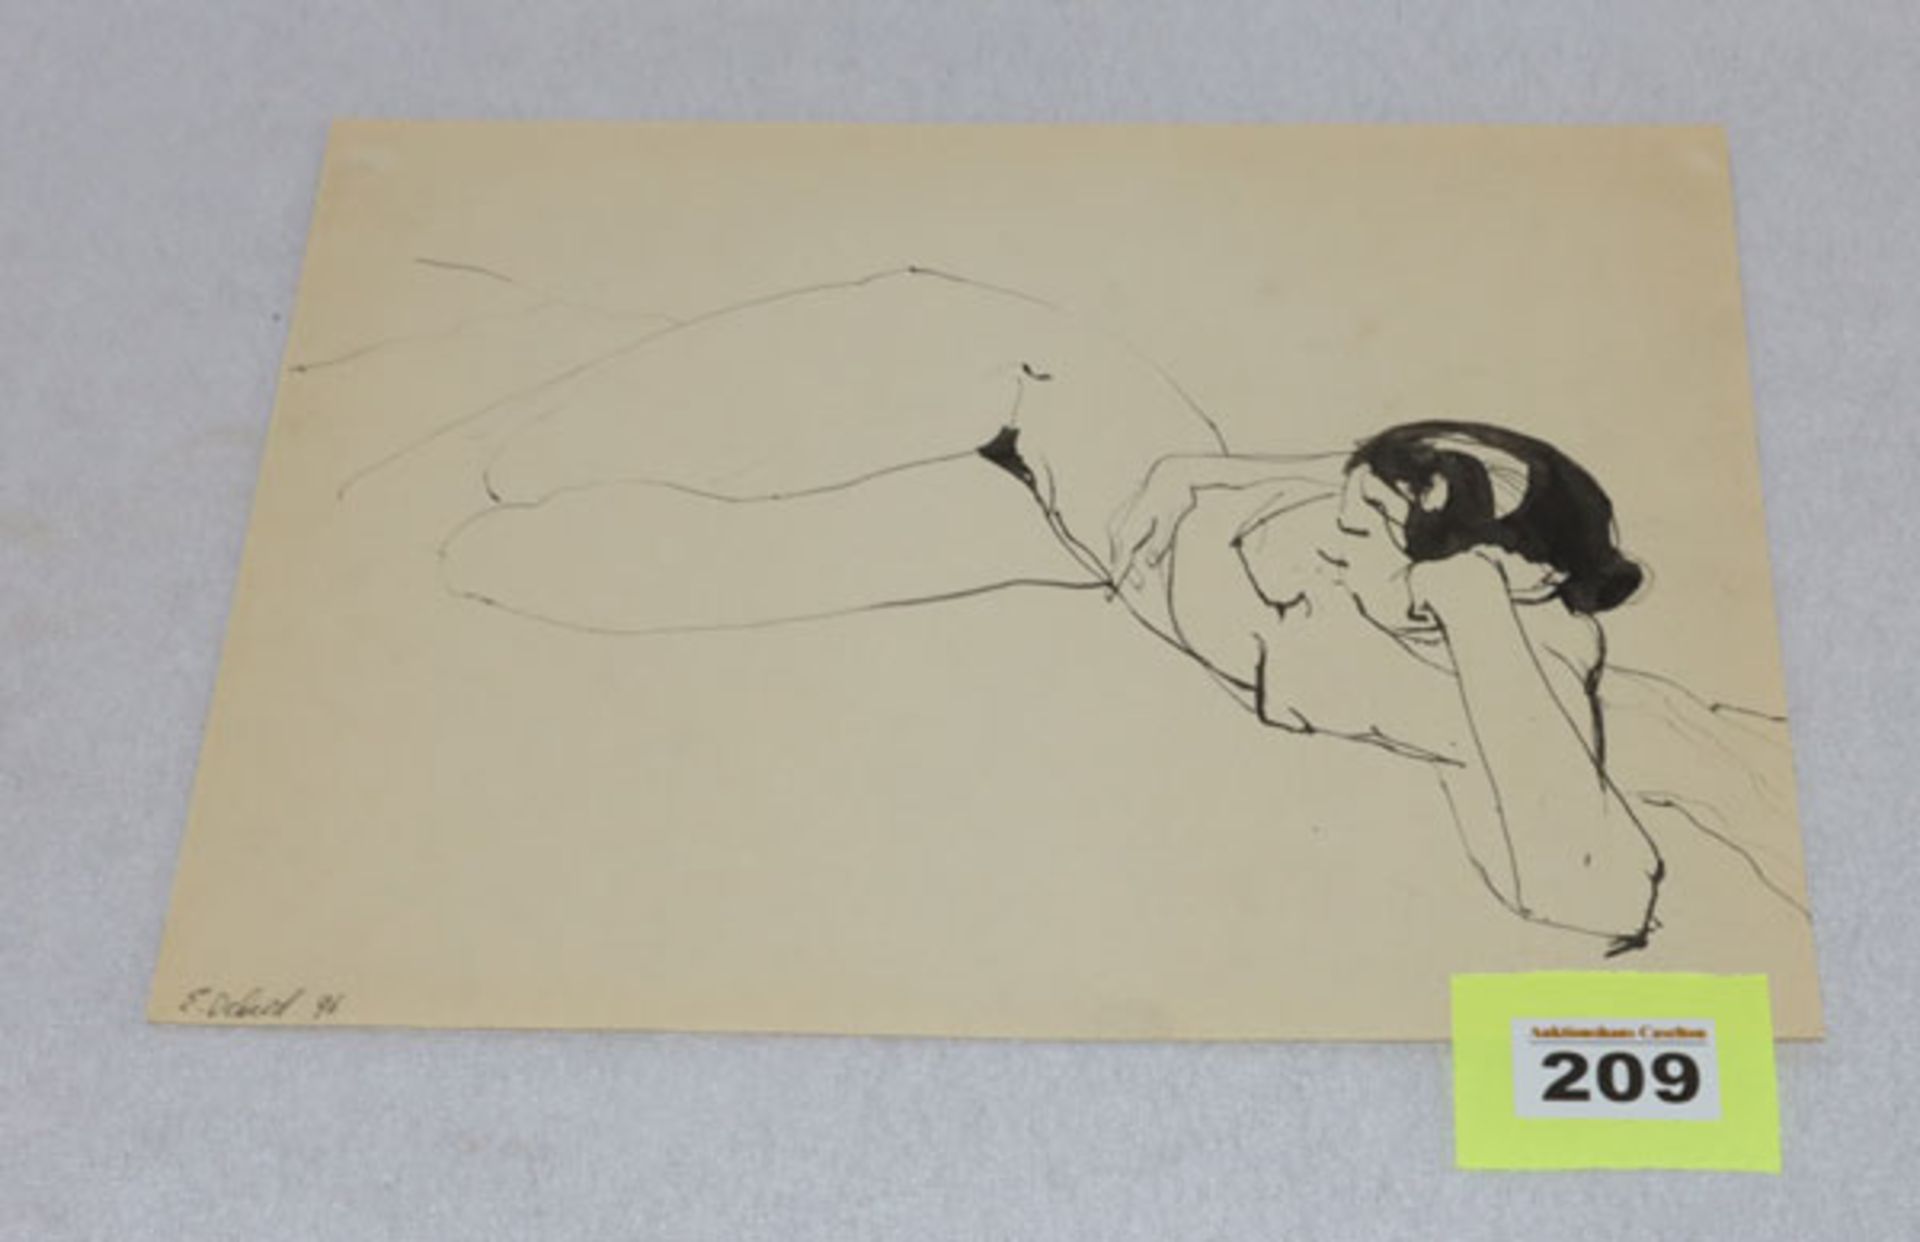 Zeichnung 'Liegender Frauenakt', signiert E. Deberd 96, Blattgröße 24 cm x 32 cm, Blatt leicht